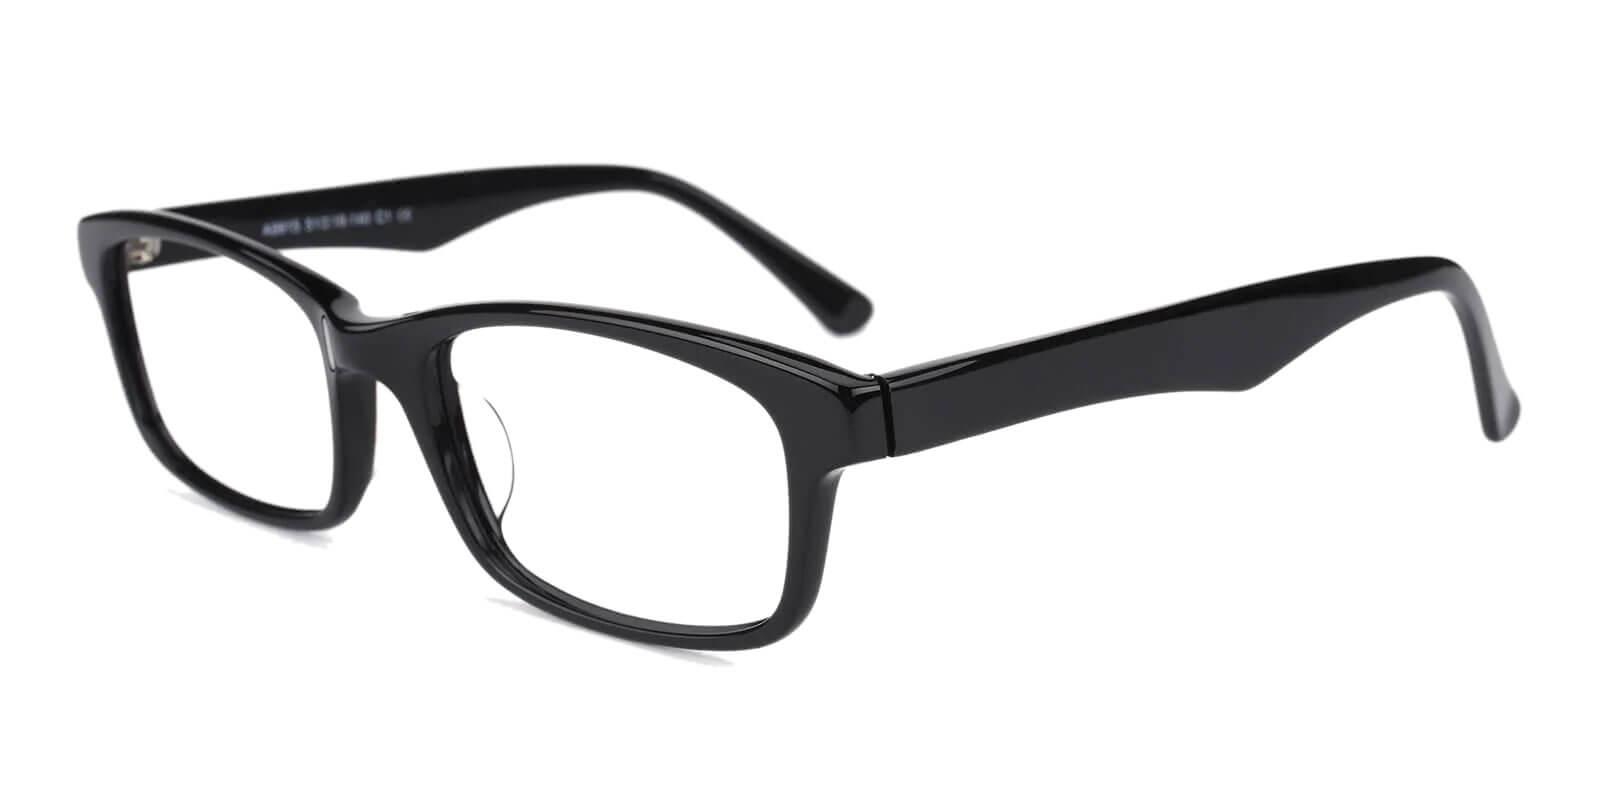 Enya Black Acetate Eyeglasses , UniversalBridgeFit Frames from ABBE Glasses